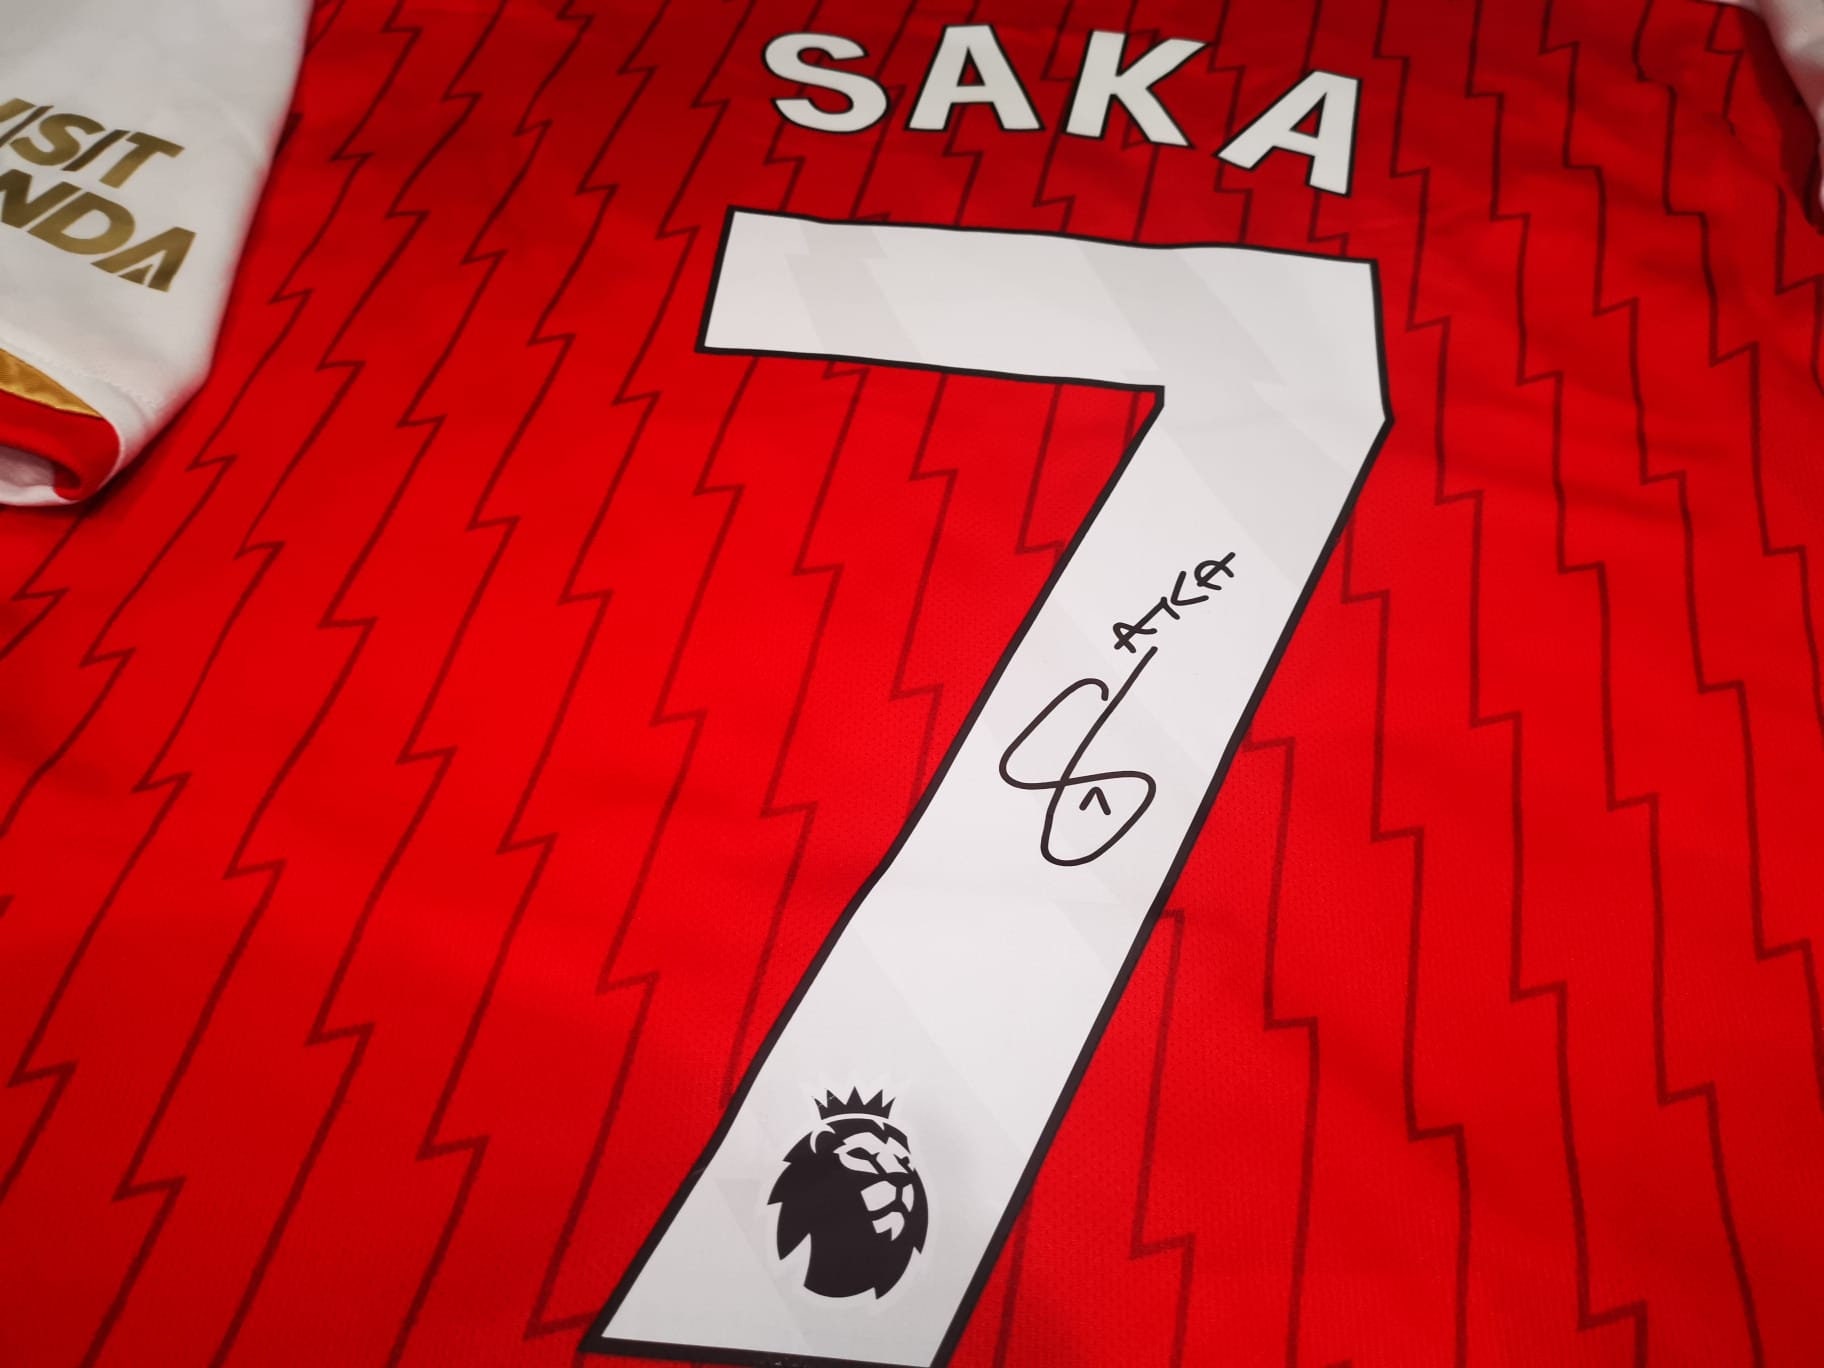 saka signed arsenal shirt